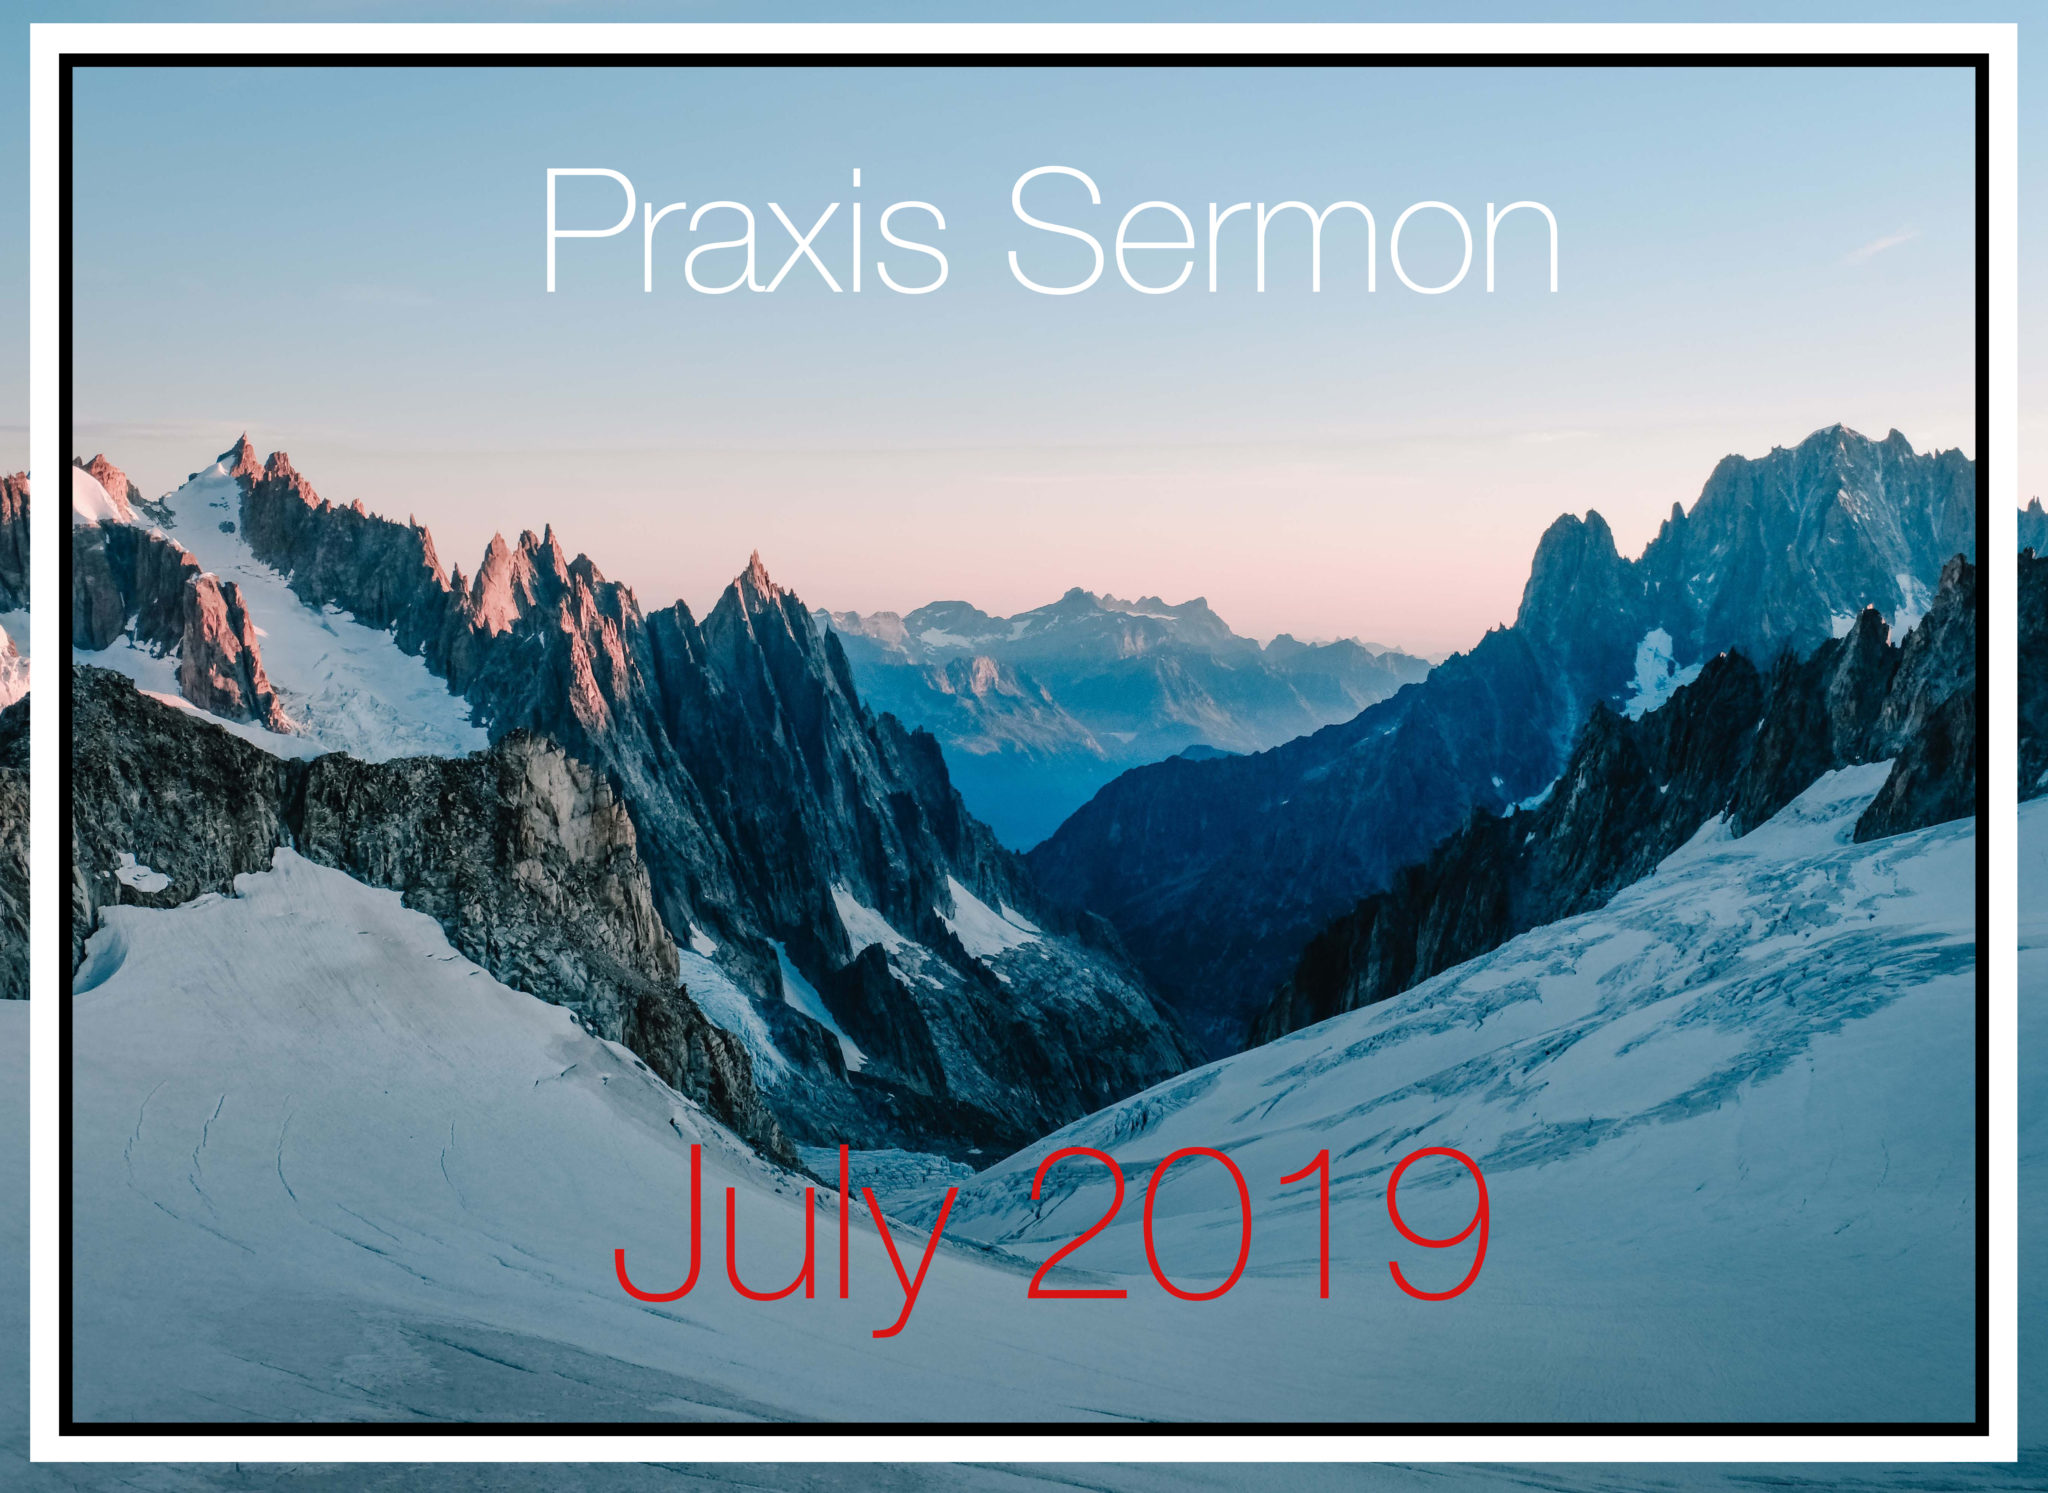 Praxis Sermon July 2019